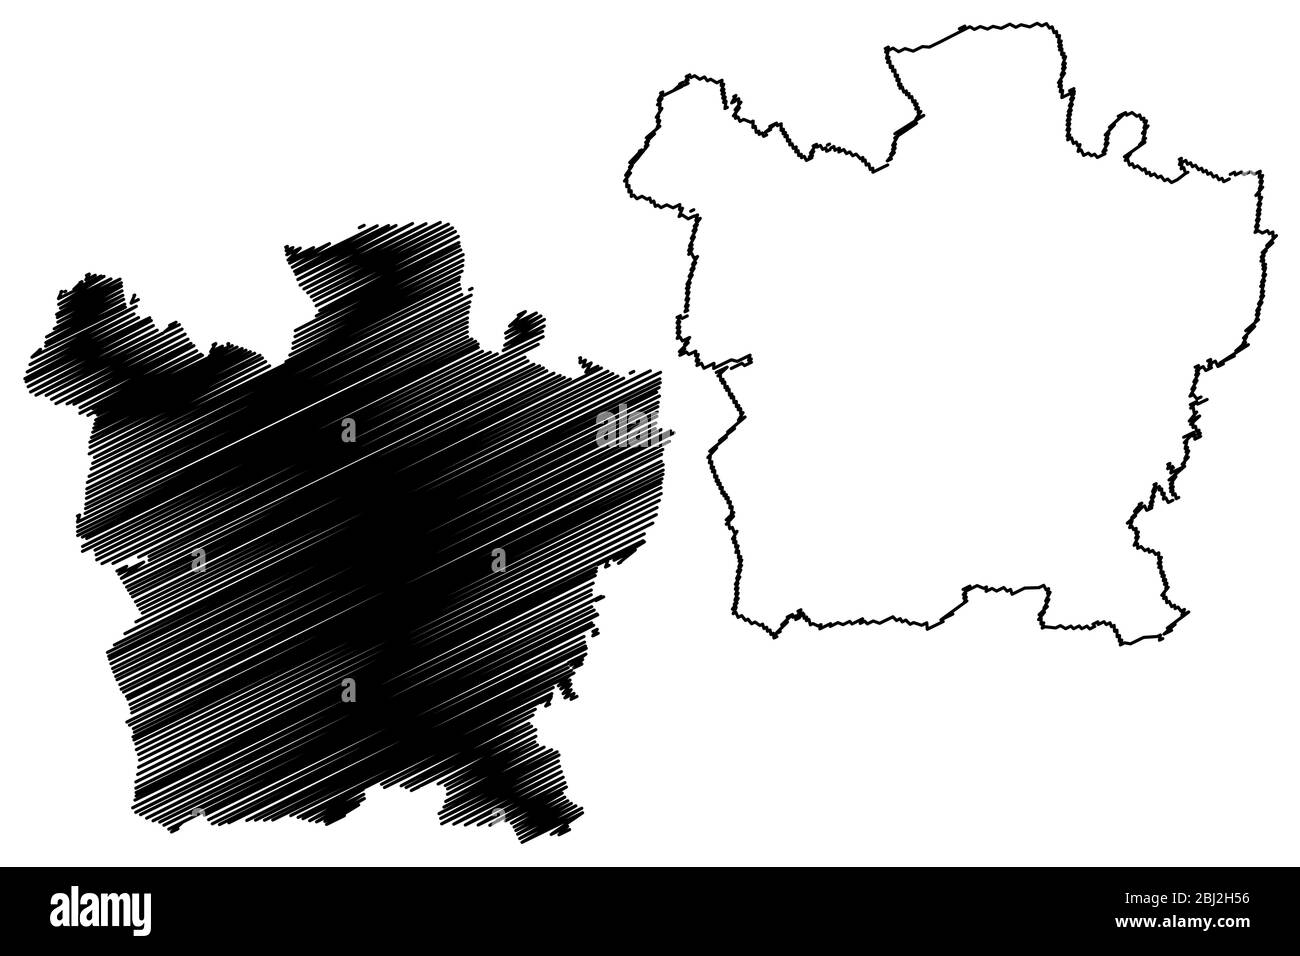 Plzen City (République tchèque, Tchéquie) illustration vectorielle de la carte, esquisse de griffonnage carte de la ville de Plzen Illustration de Vecteur